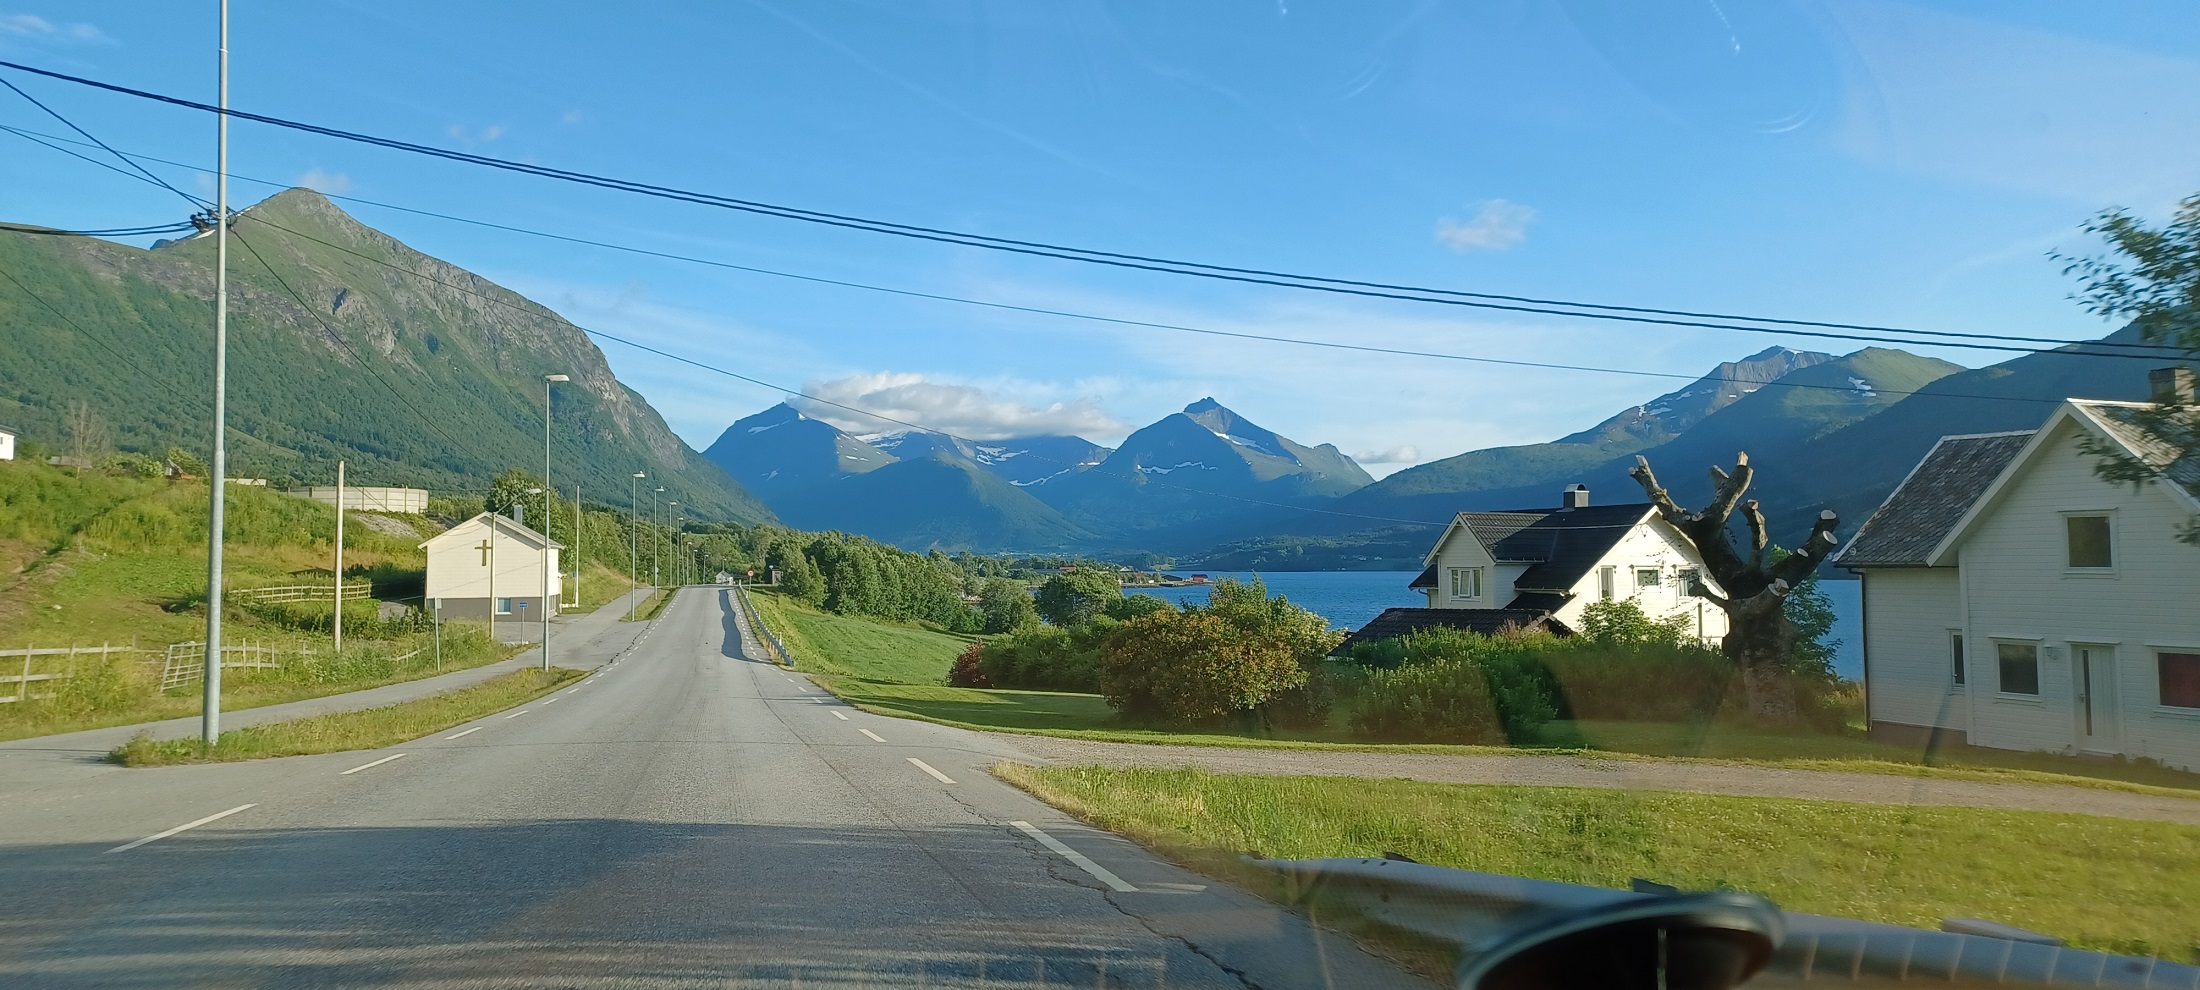 Úton visszafelé a Fagervik kempingbe, már messziről megismertük a csodás hegyeket, amikre rálátunk a kis kutyaólból